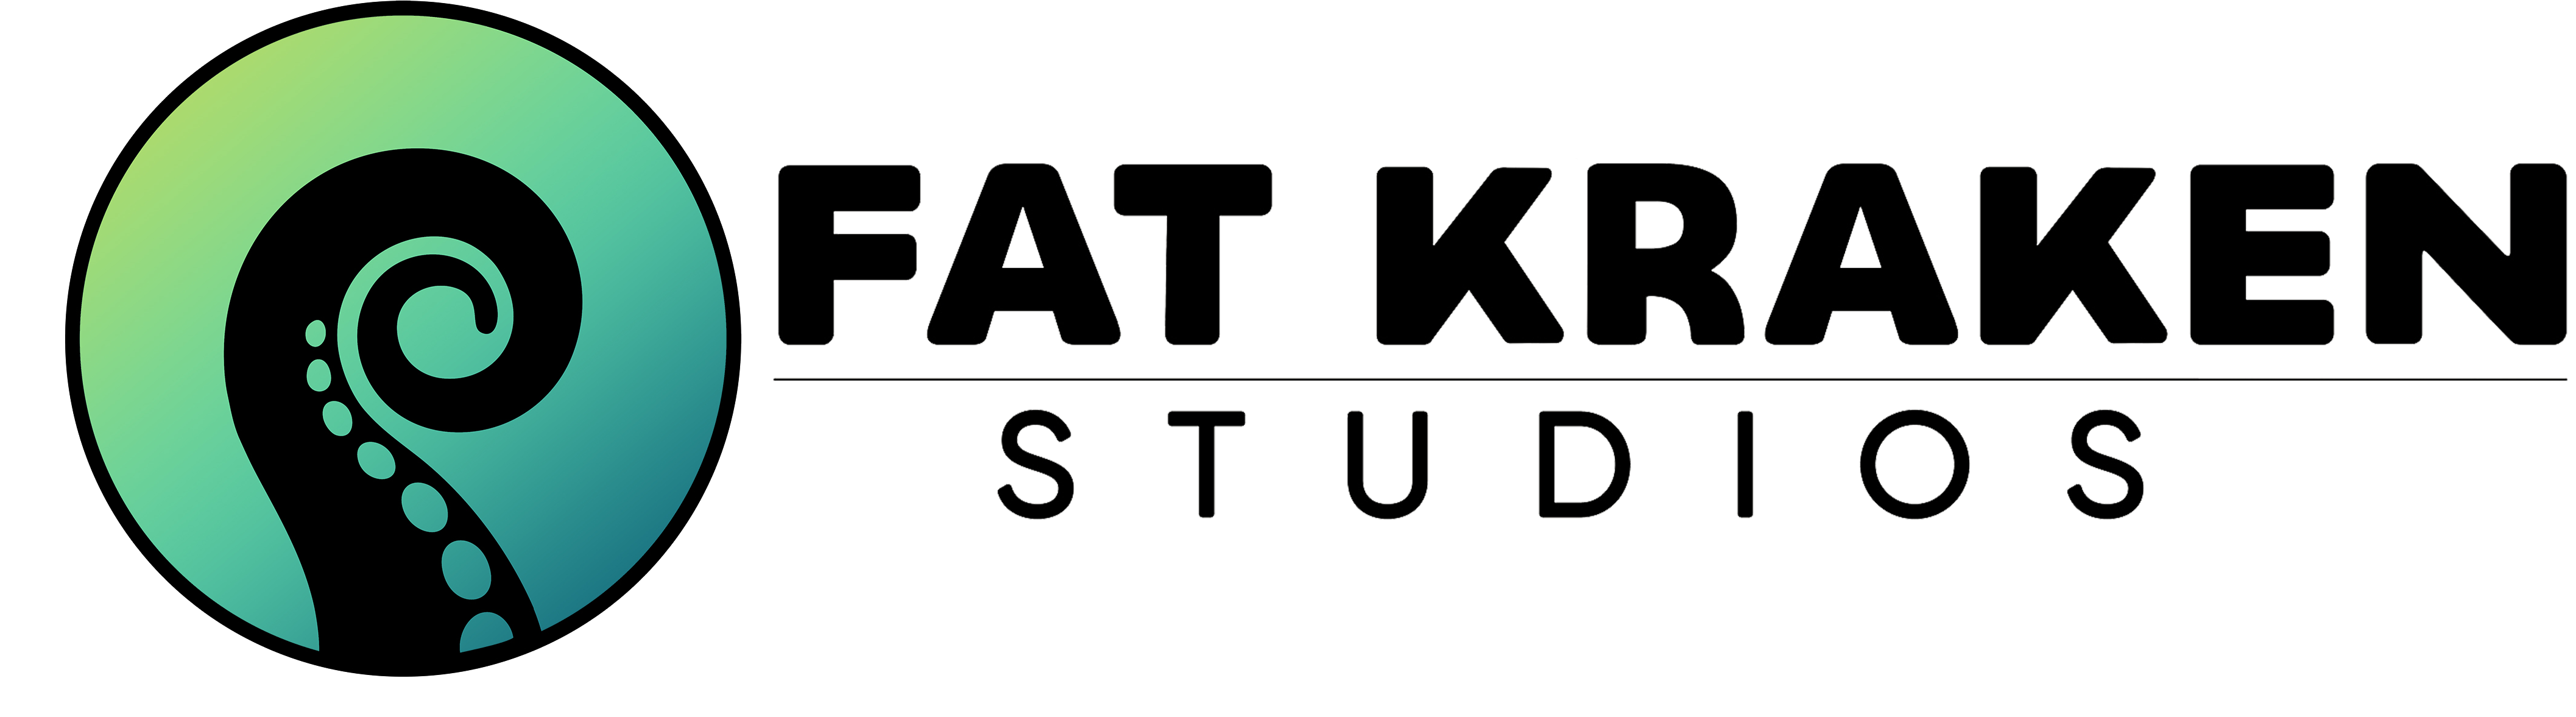 Fat Kraken Studios 